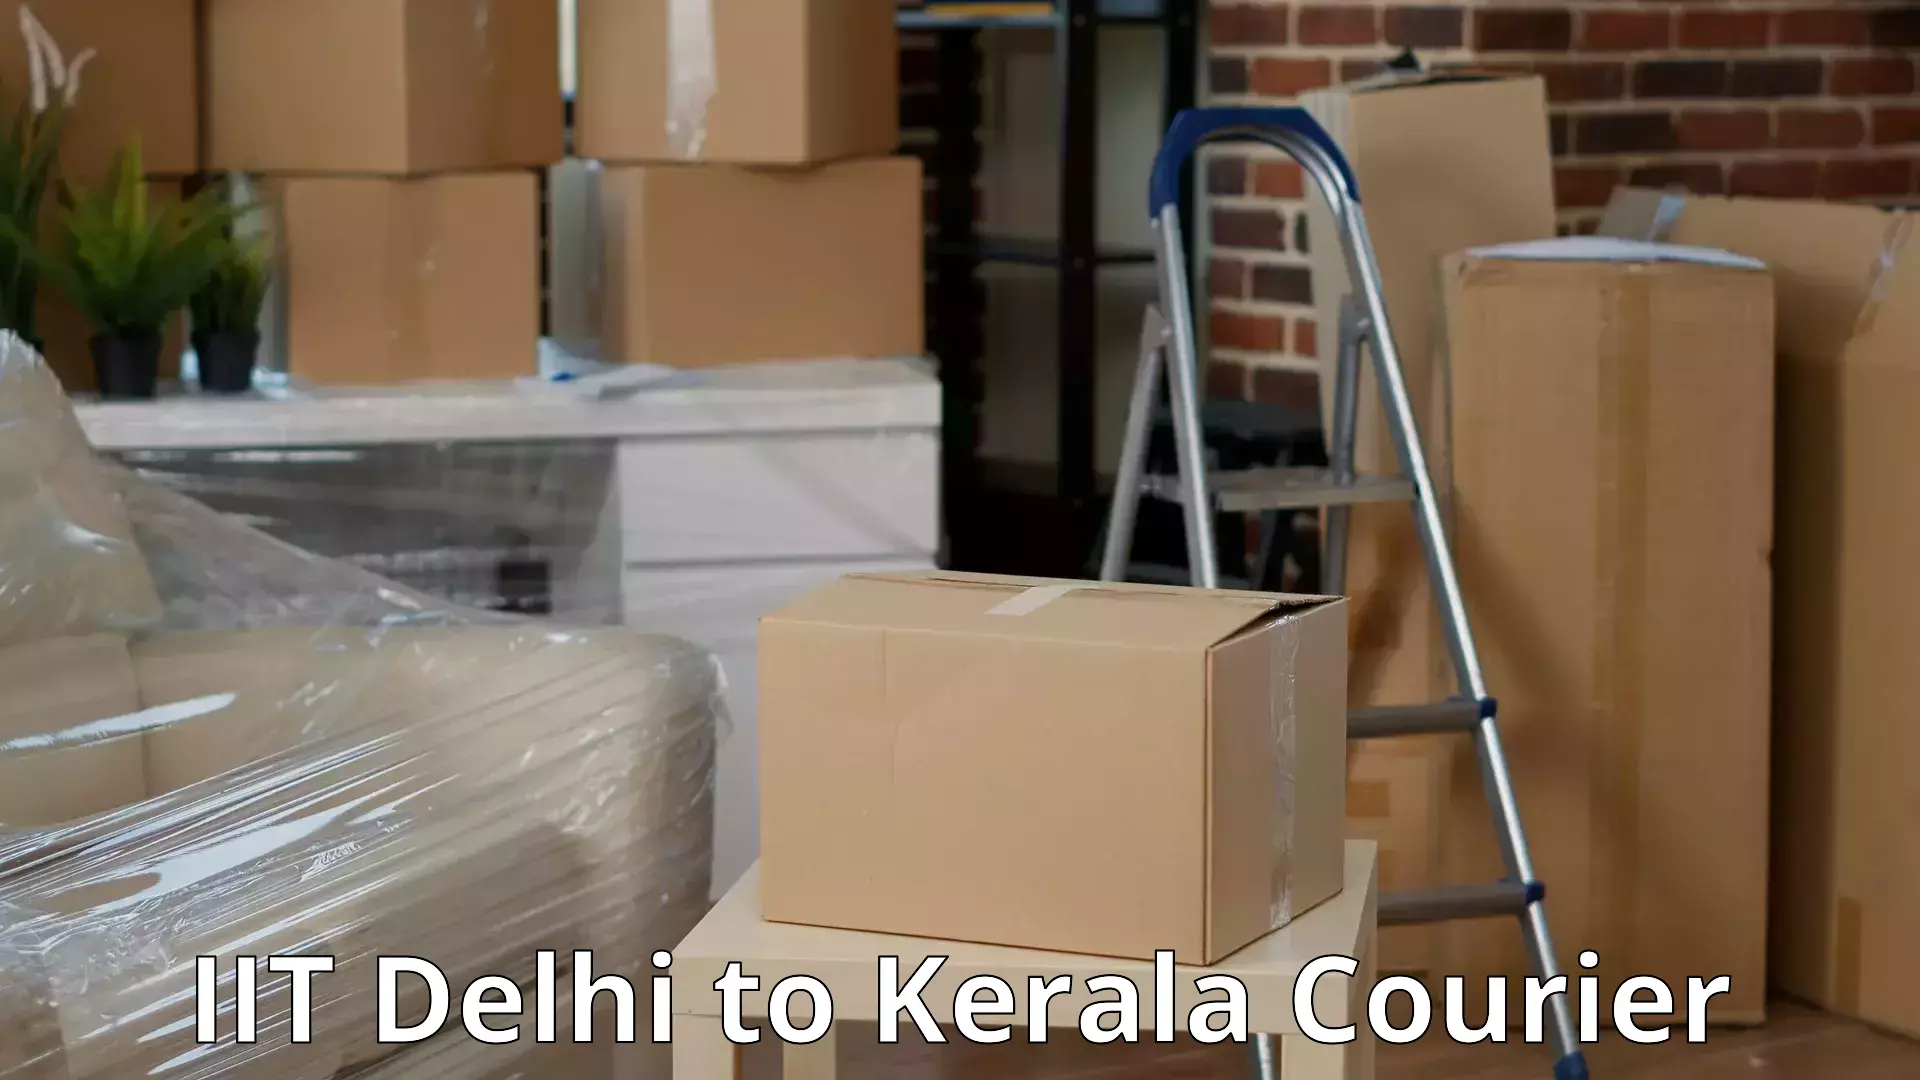 Professional movers IIT Delhi to Koothattukulam